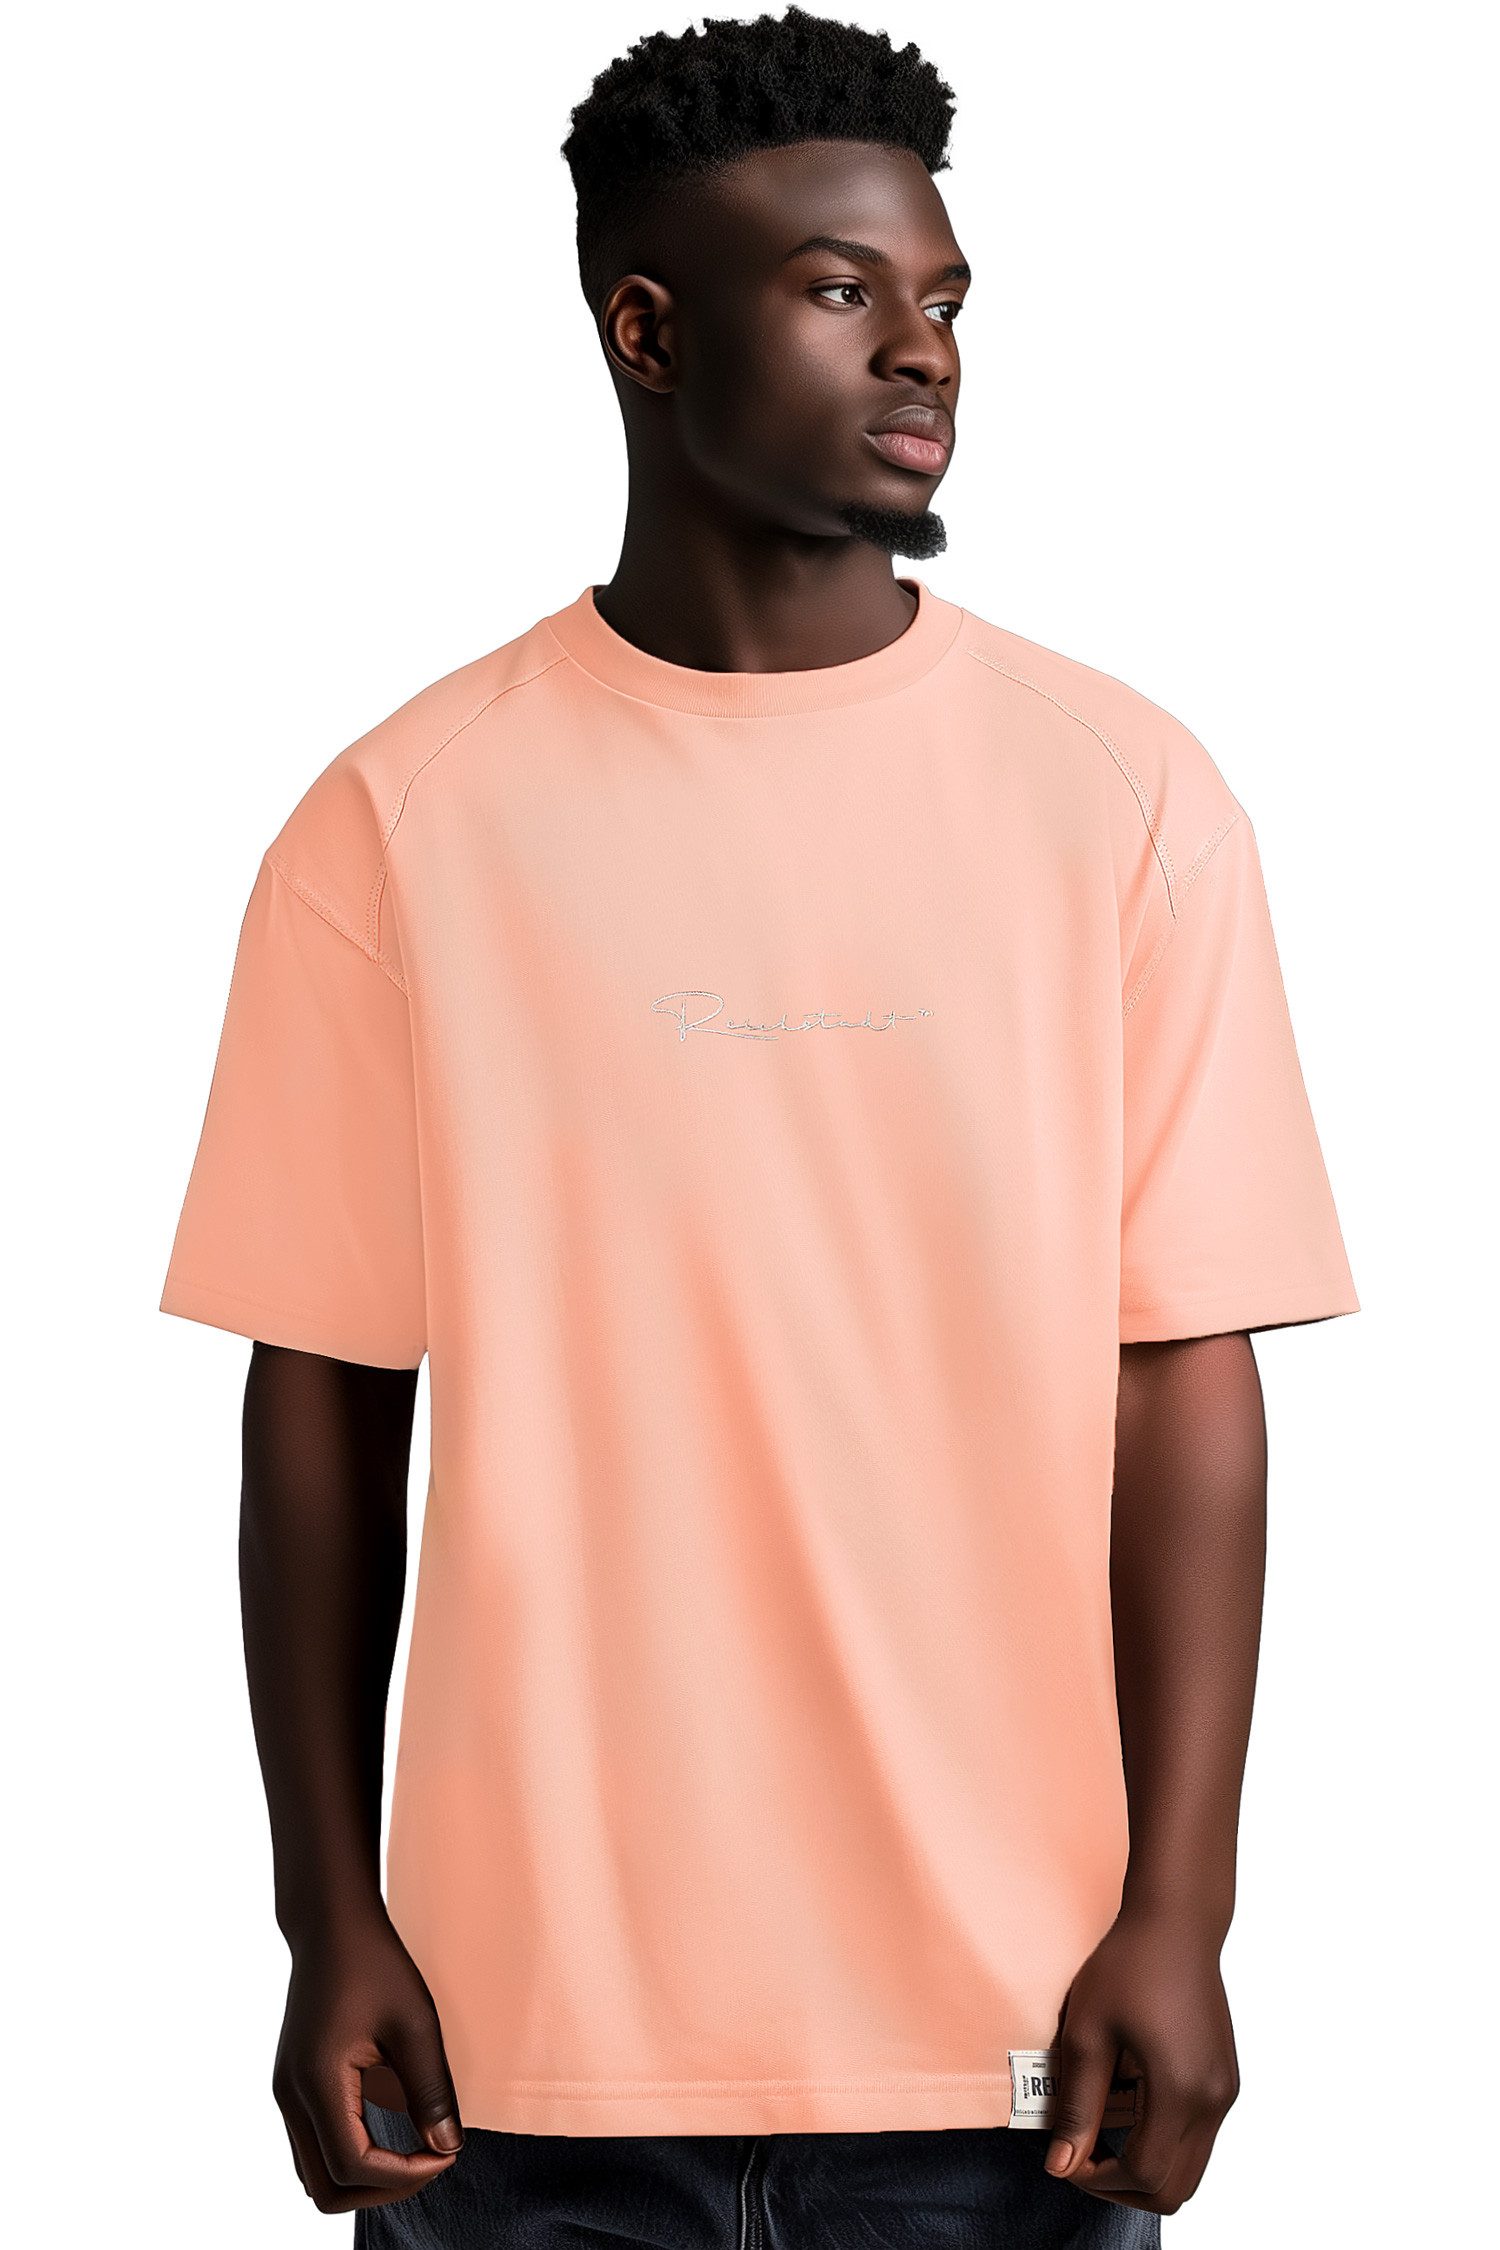 Reichstadt Oversize-Shirt Casual T-shirt 22RS033 Old Pink XL mit Stitching auf der Brust